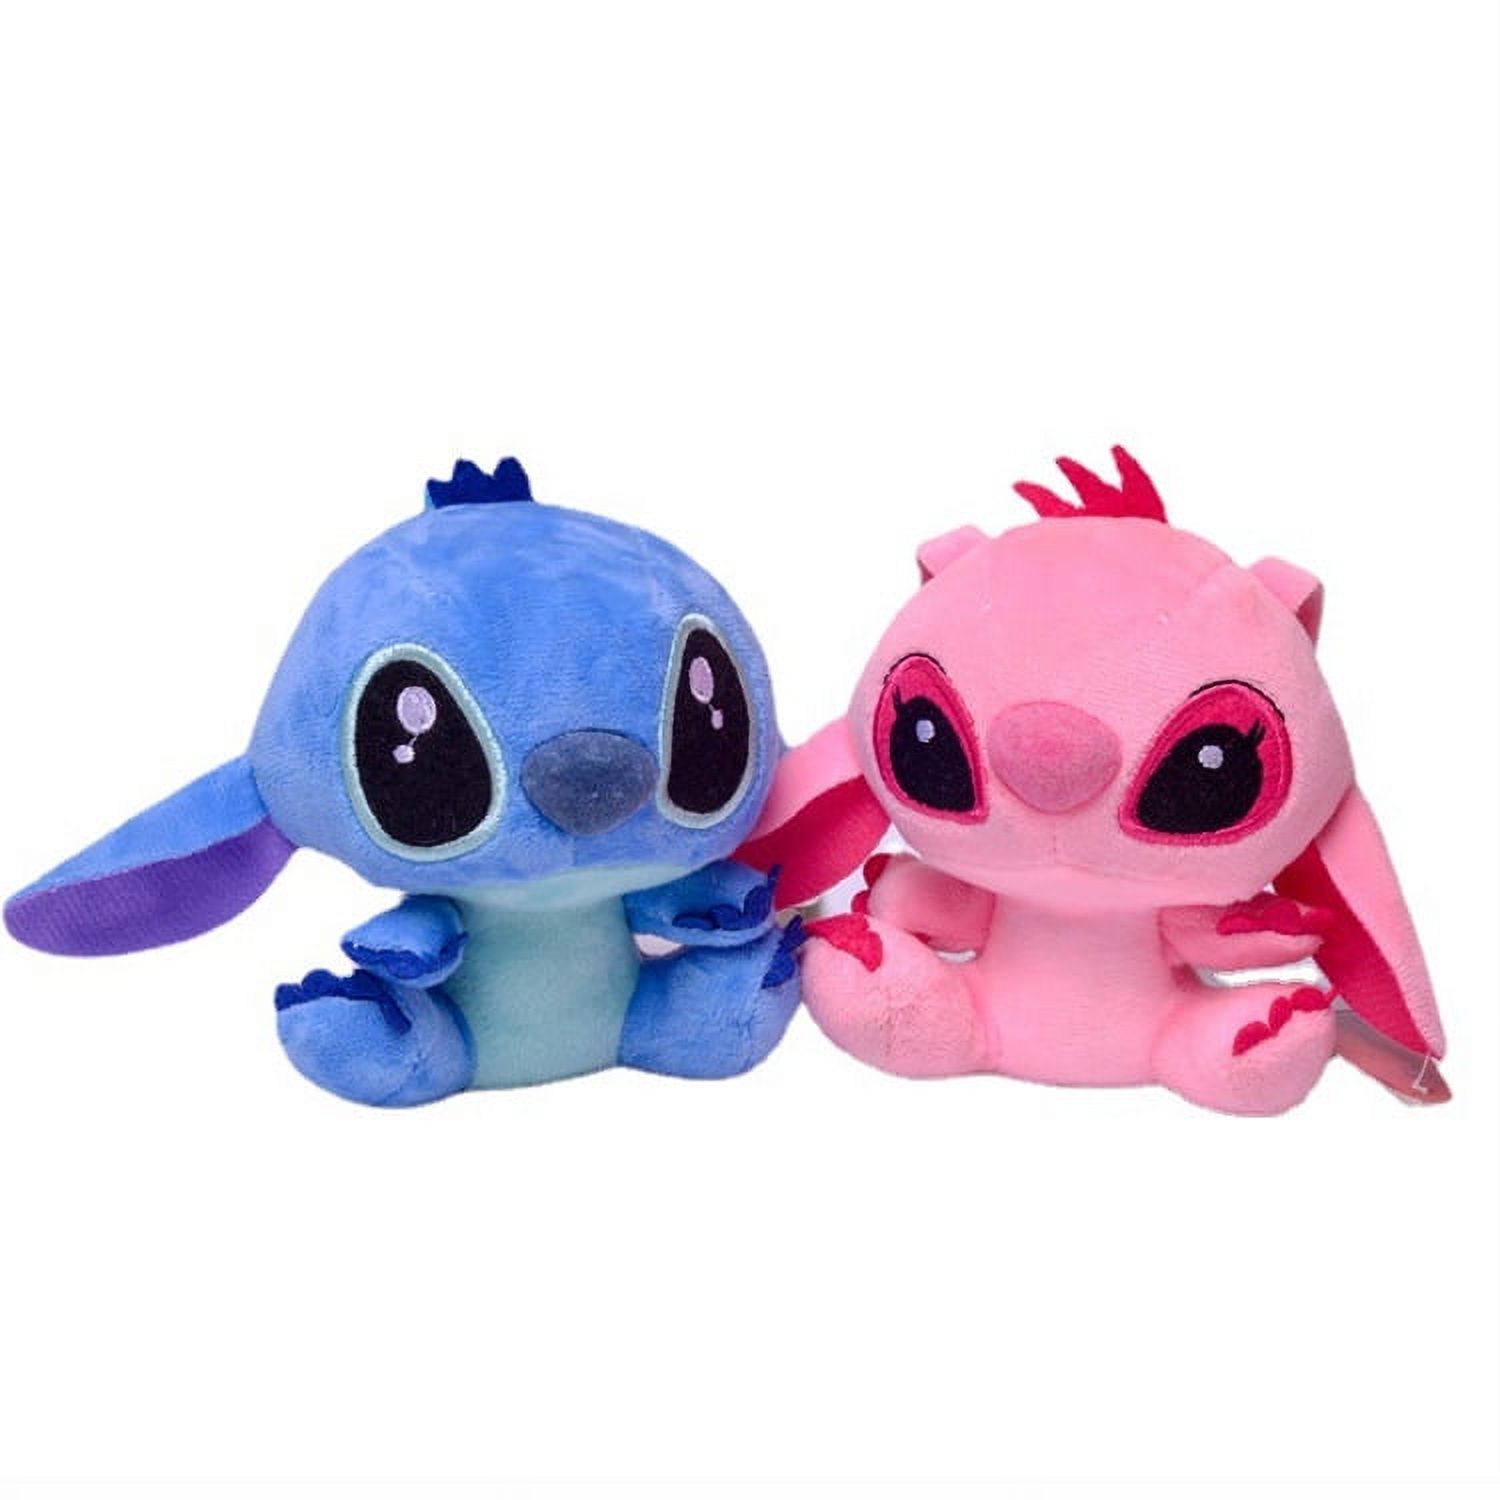 2pcs Stitch Plush Toys, 3.9 inch Blue and Pink Lilo & Stitch Stuffed Dolls, Blue Pink Stitch Gifts, Soft and Huggable, Stuffed Pillow Buddy, Stitch